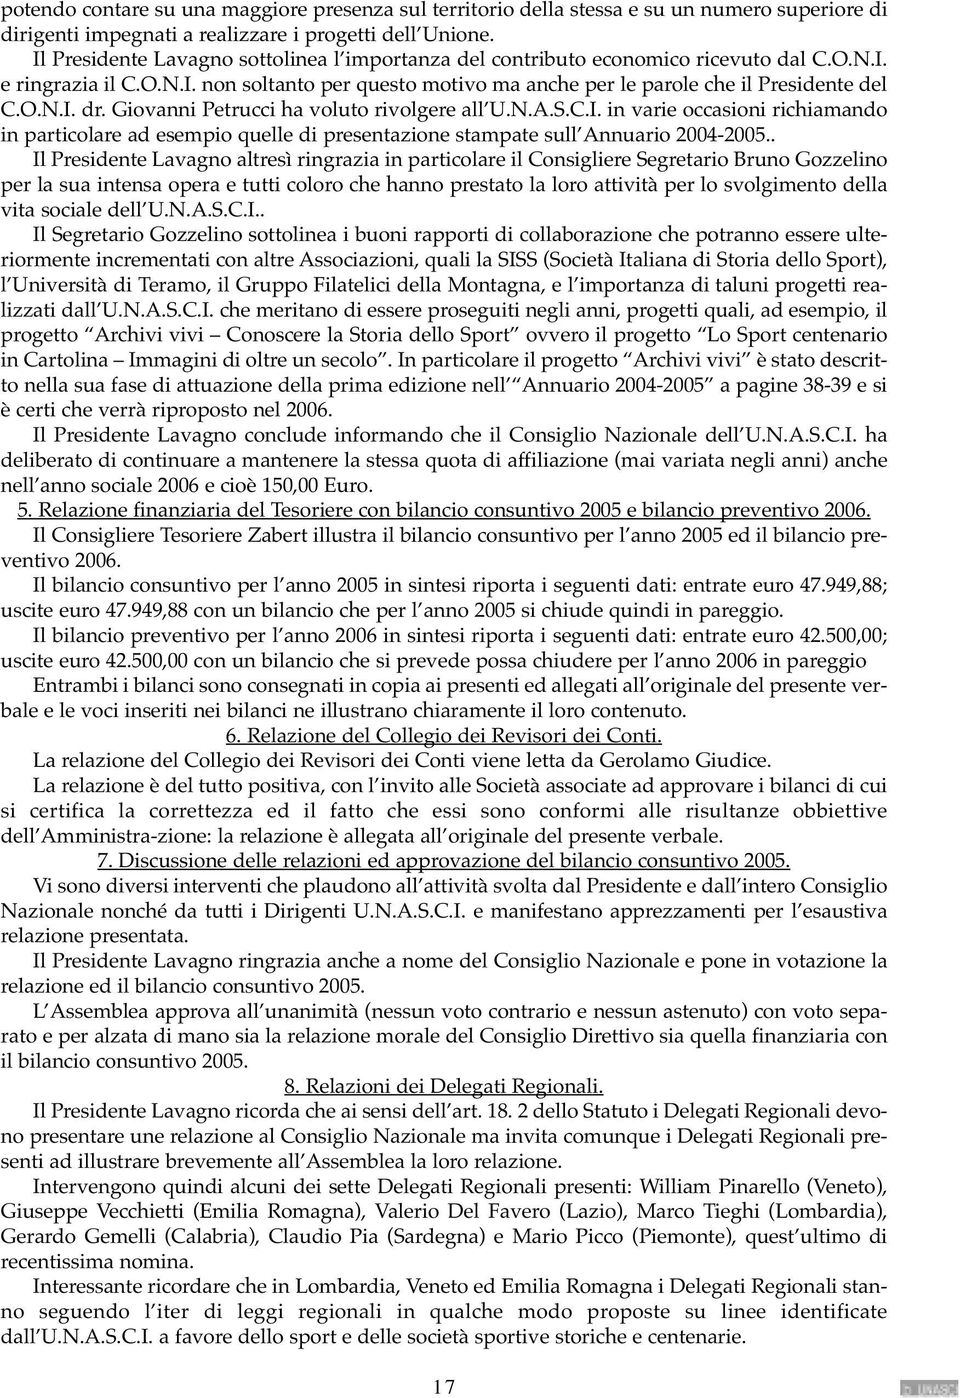 Giovanni Petrucci ha voluto rivolgere all U.N.A.S.C.I. in varie occasioni richiamando in particolare ad esempio quelle di presentazione stampate sull Annuario 2004-2005.